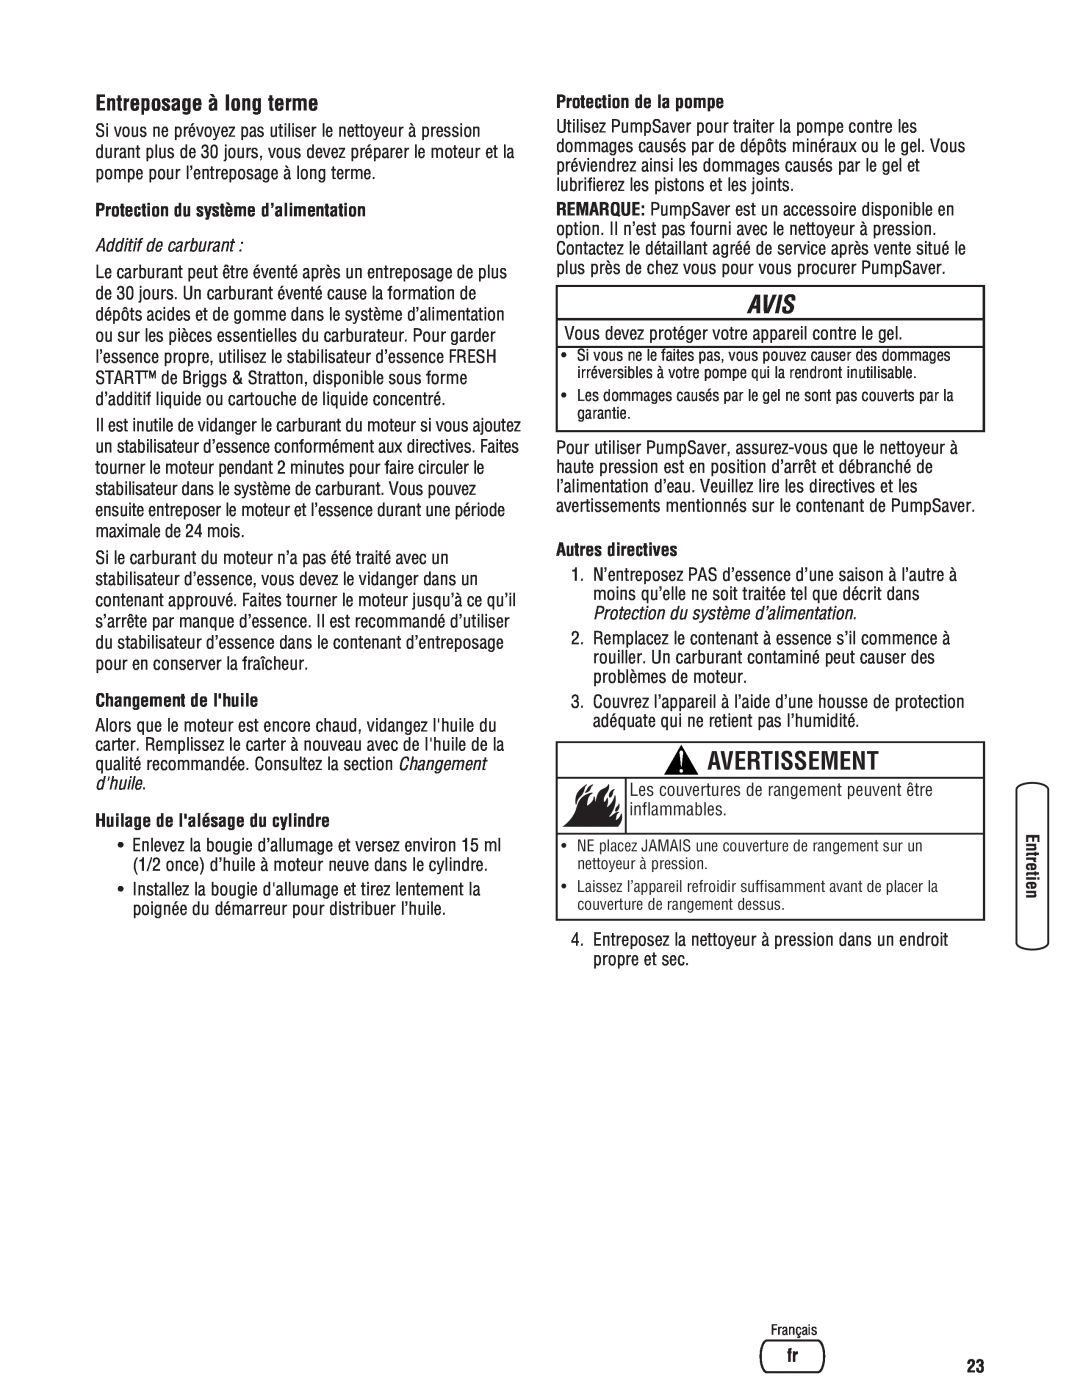 Briggs & Stratton 2900 PSI manual Avis, Avertissement, Protection du système d’alimentation, Changement de lhuile 